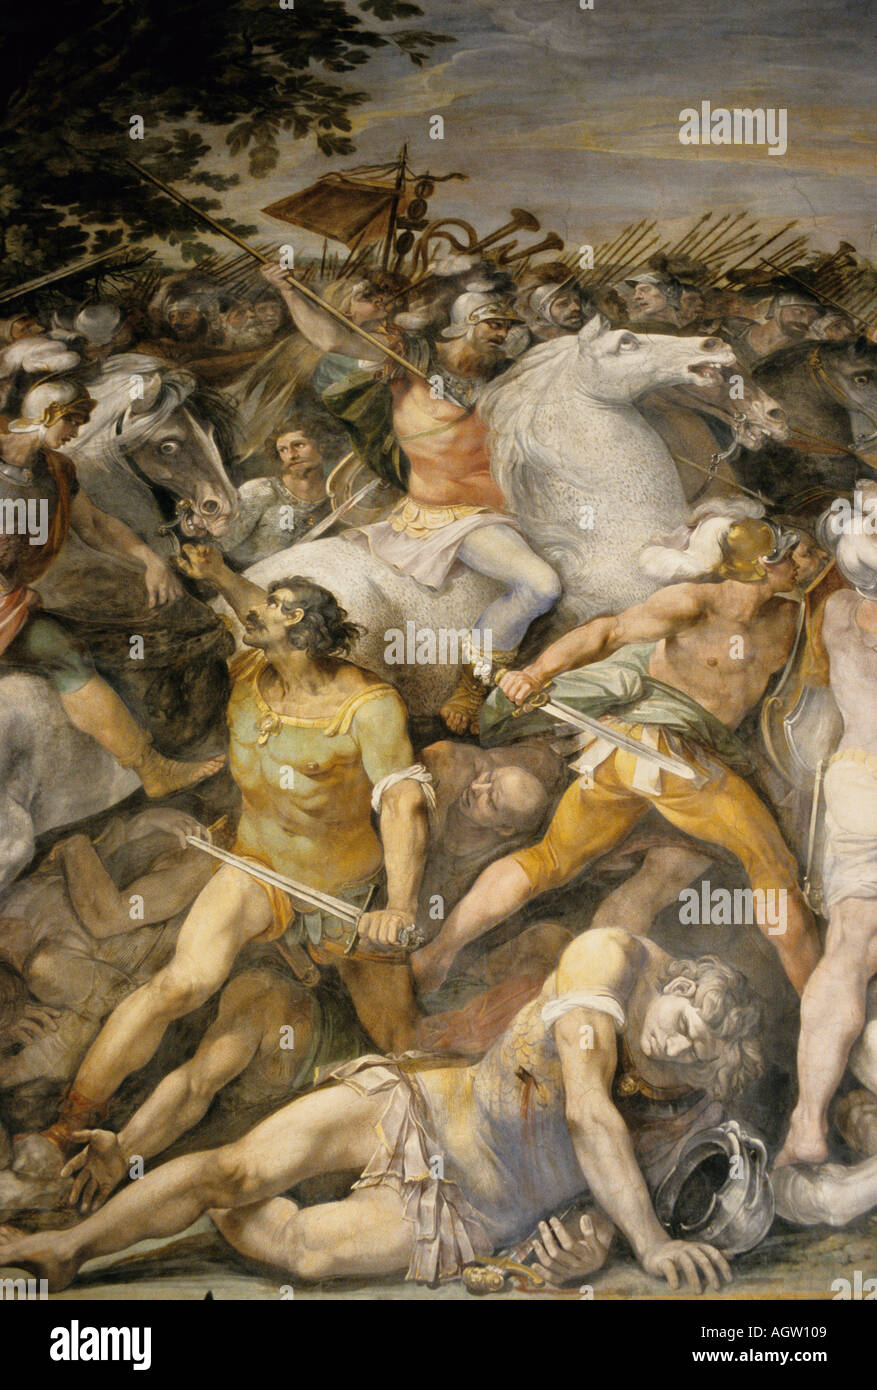 Italia Roma Il Museo Capitolino dettaglio del XVI C affreschi nella Sala dei Capitani Foto Stock